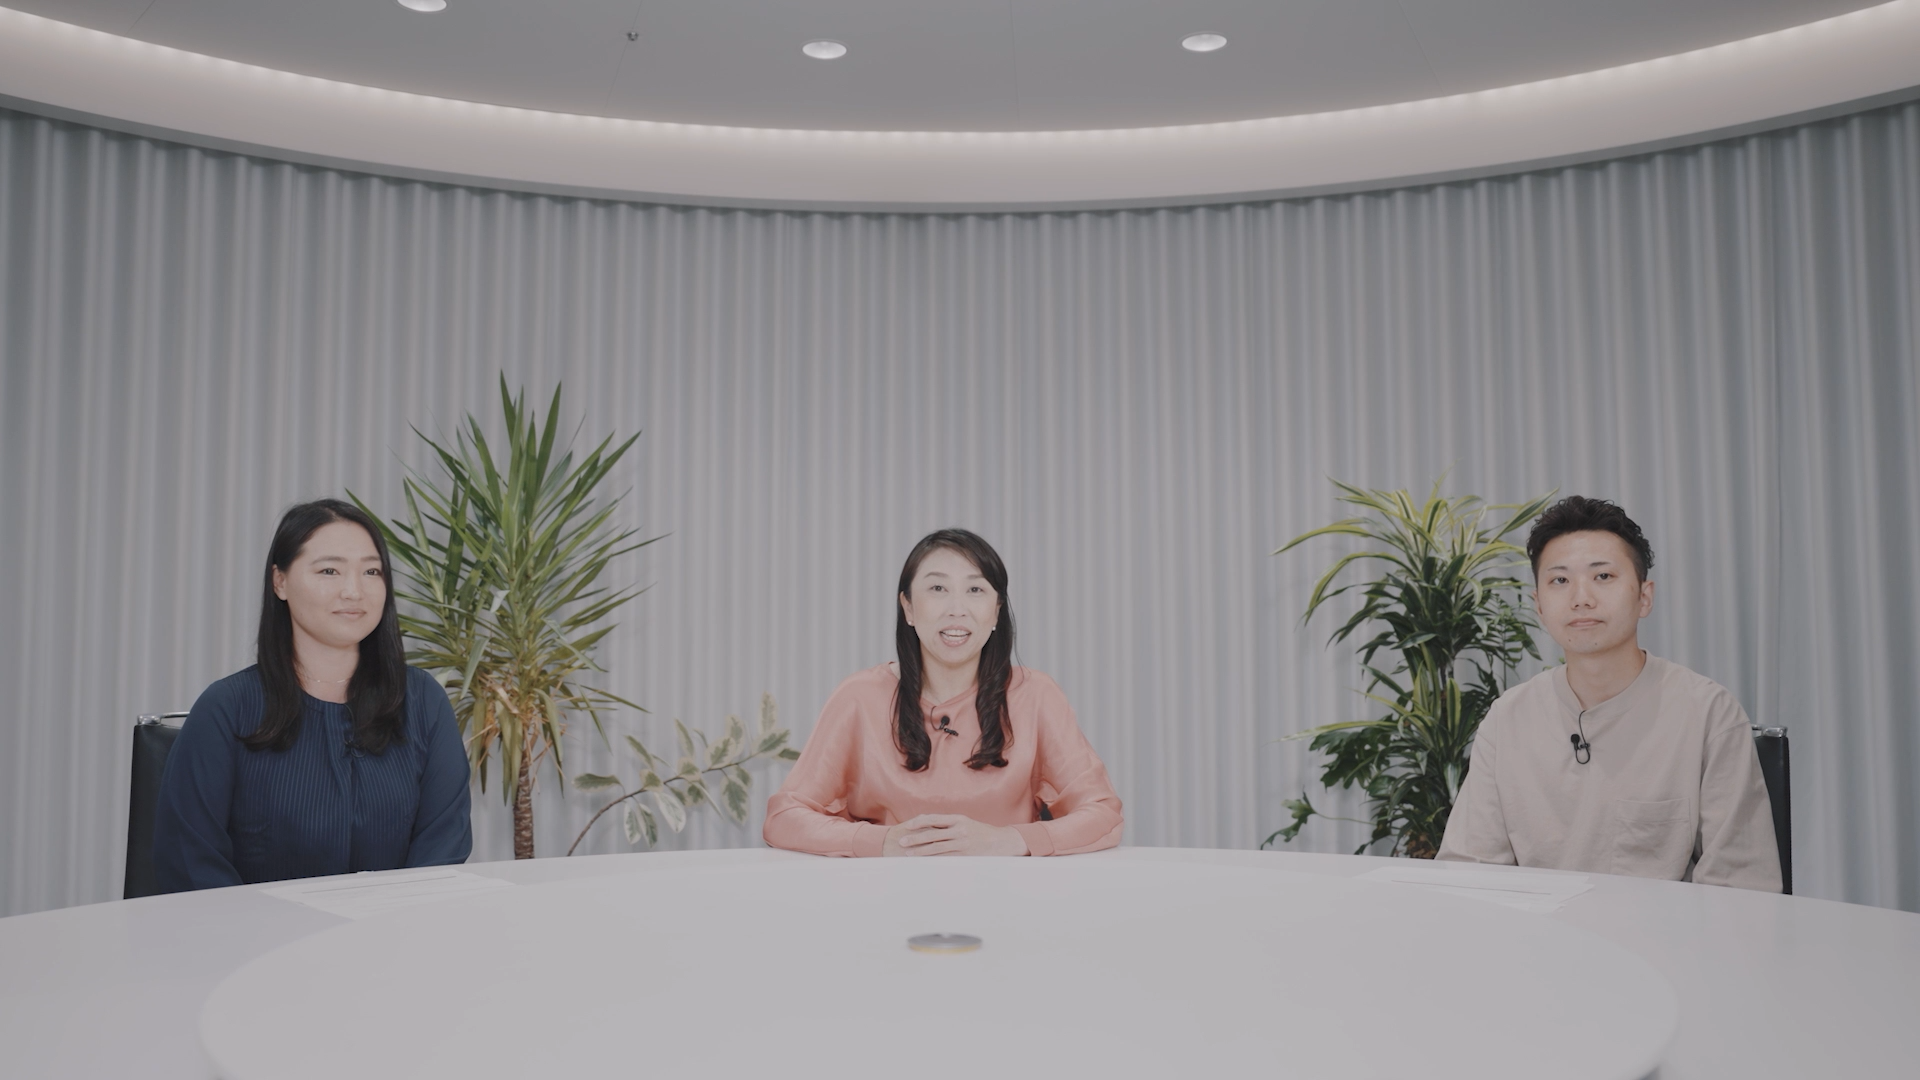 新しい行動指針と企業風土について、CEO清明が、社内表彰された社員2名と語る動画です。